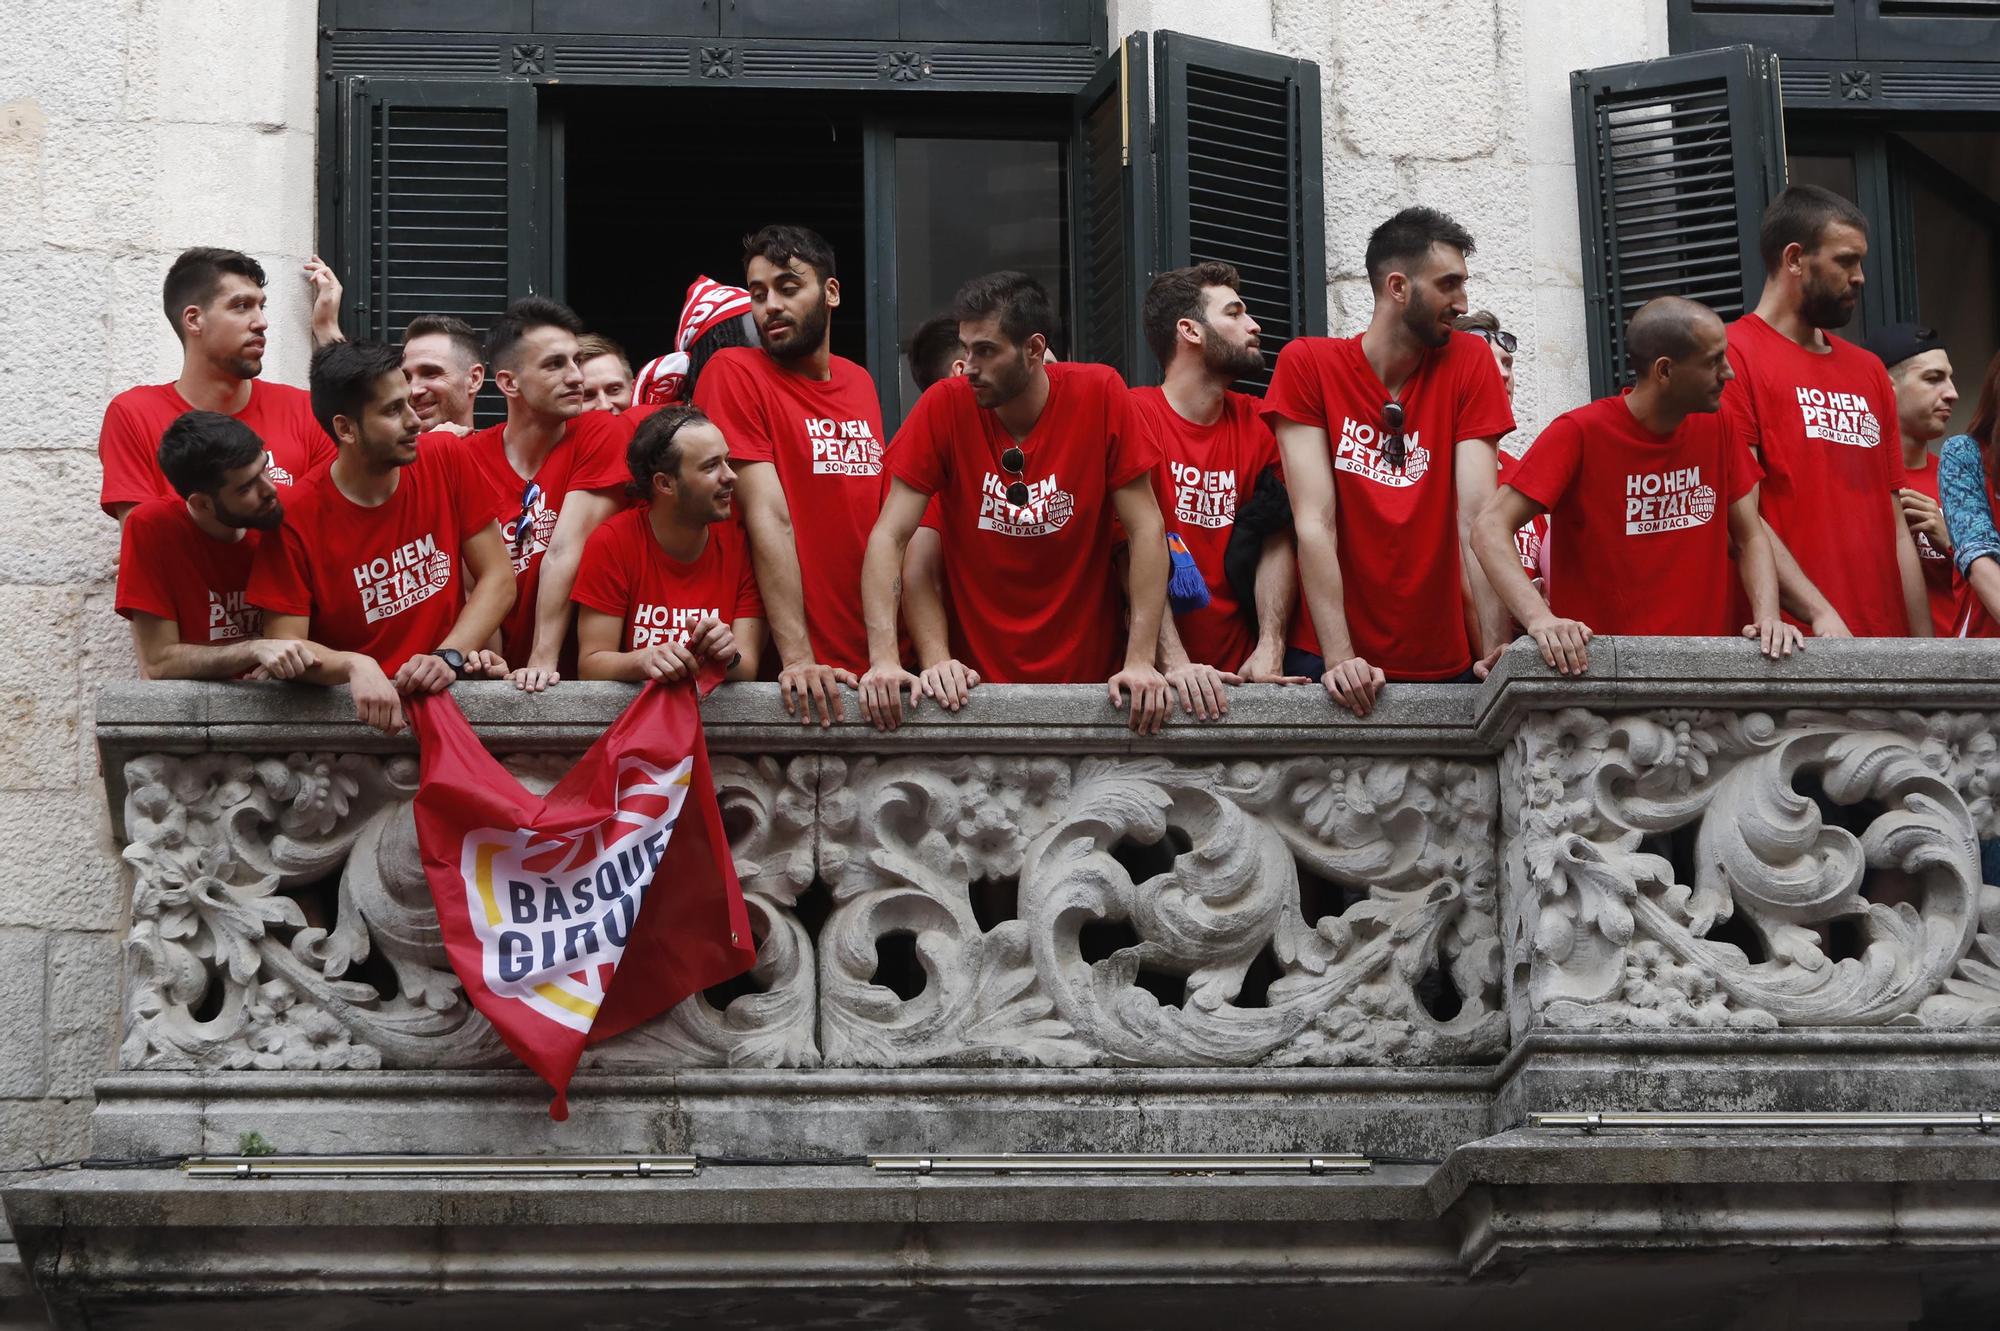 Les millors imatges de la rua de celebració del Girona i el Bàsquet Girona